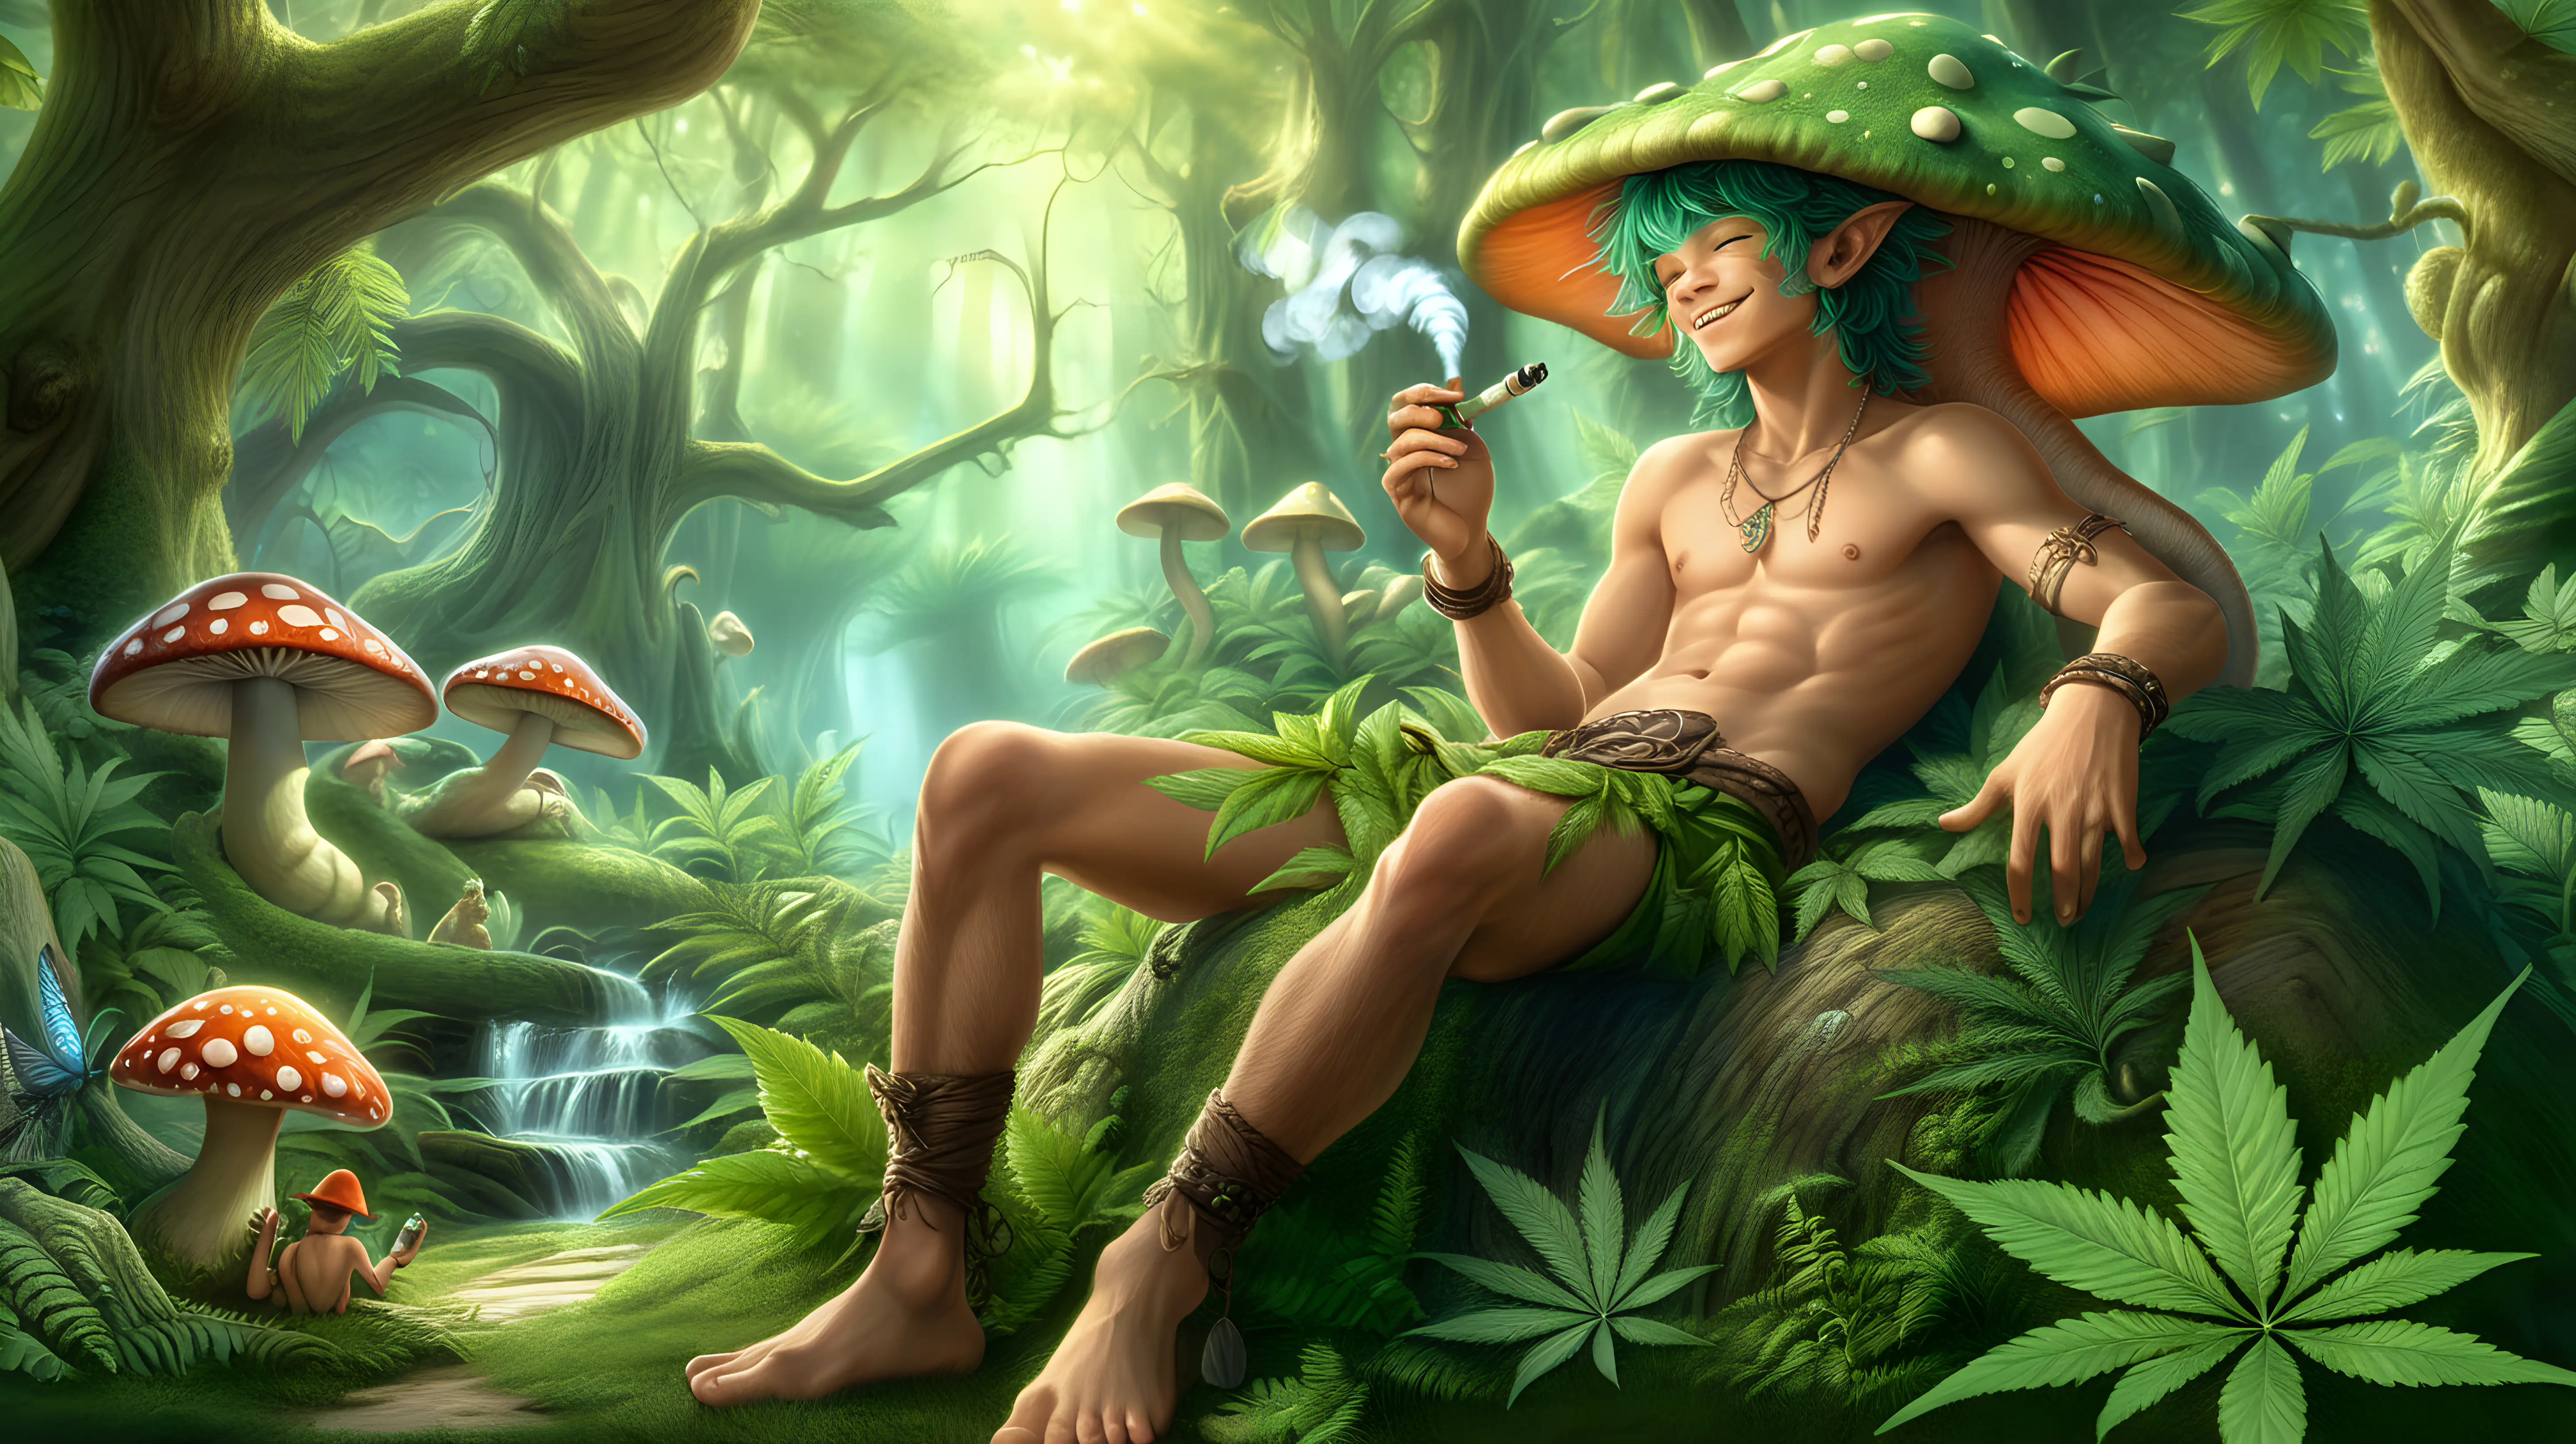 Enchanted Forest Fantasy Anthropomorphic Dragon Boy Enjoying Cannabis Pipe on Mushroom Cap